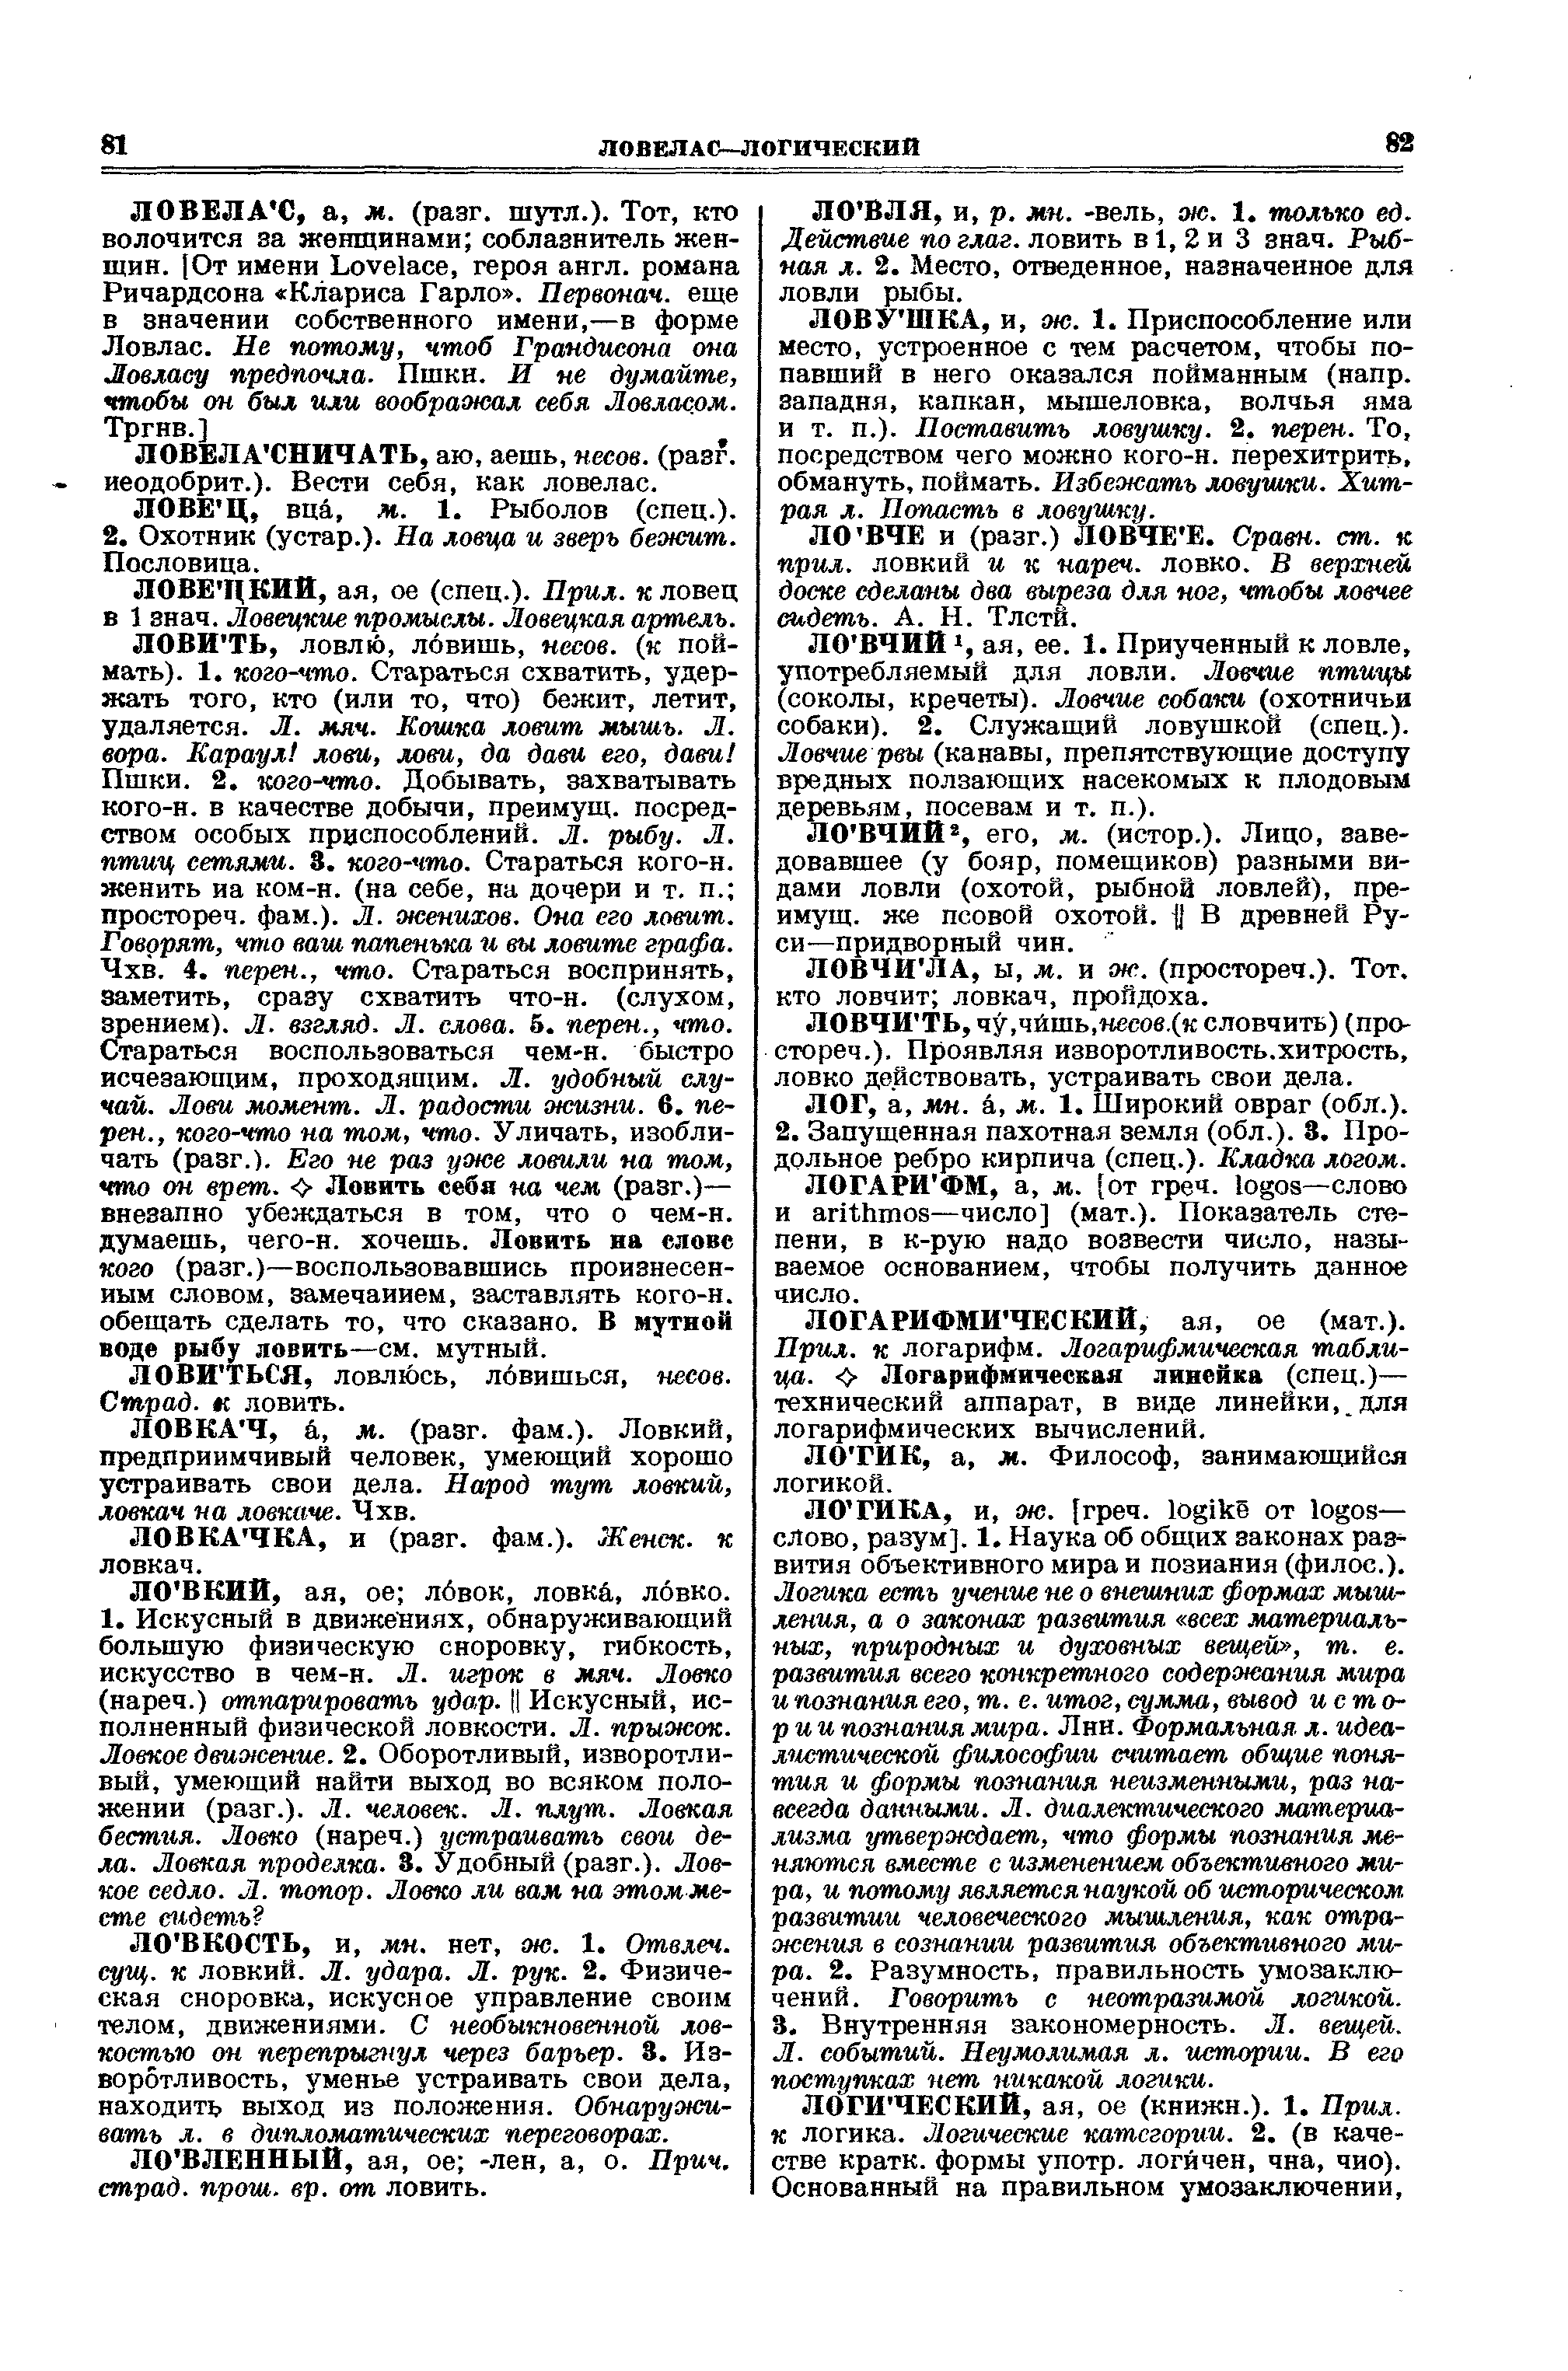 Фотокопия pdf / скан страницы 41 толкового словаря Ушакова (том 2)